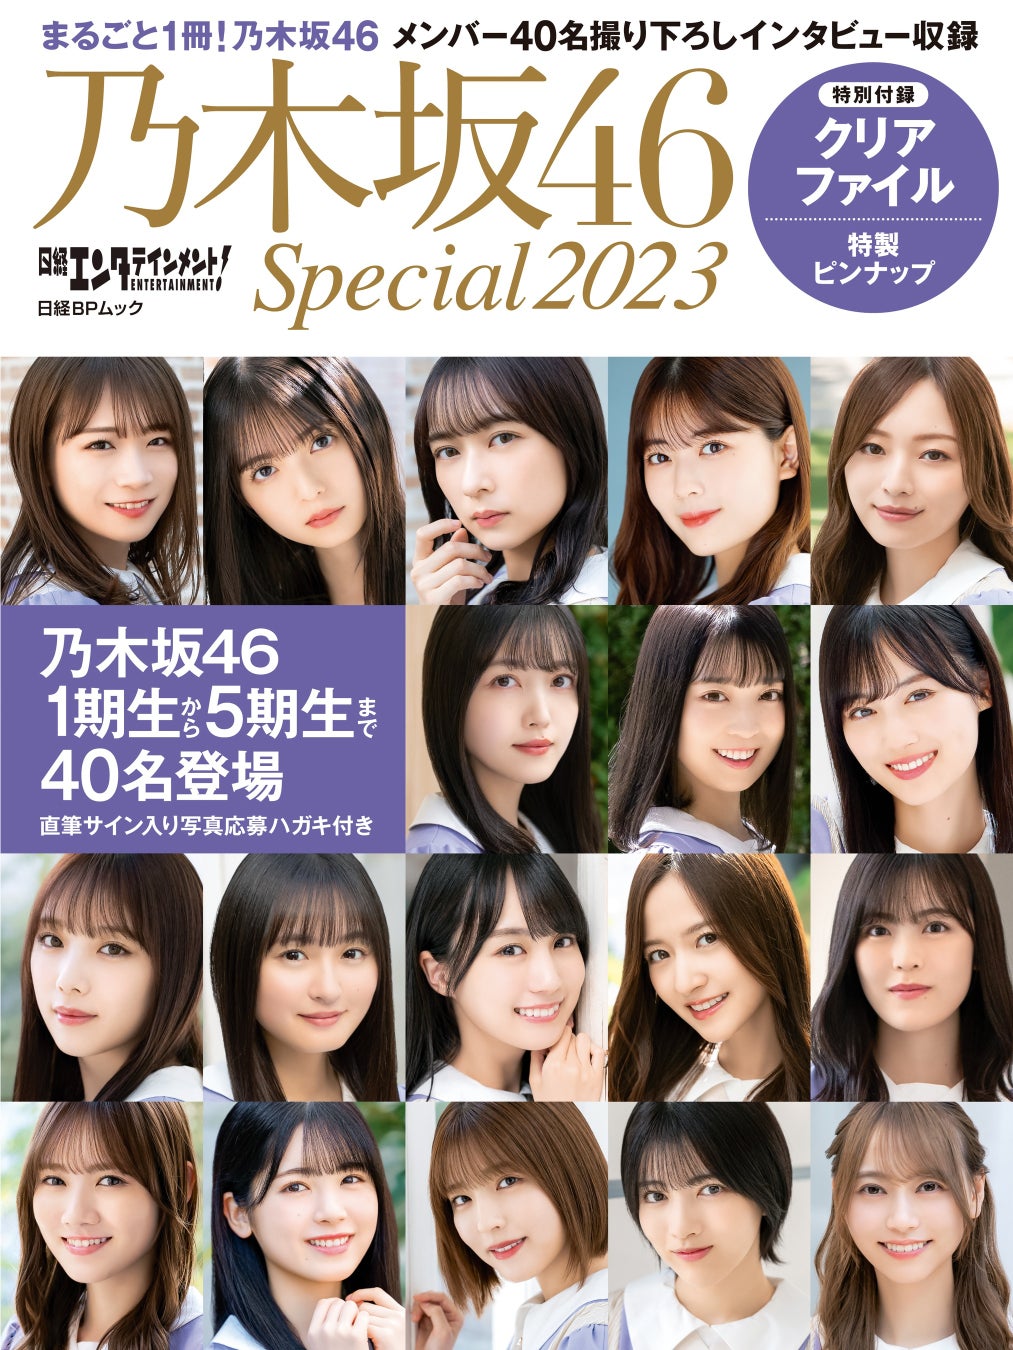 乃木坂46・40名のメンバーが登場する『日経エンタテインメント! 乃木坂46 Special 2023』を発売のサブ画像1